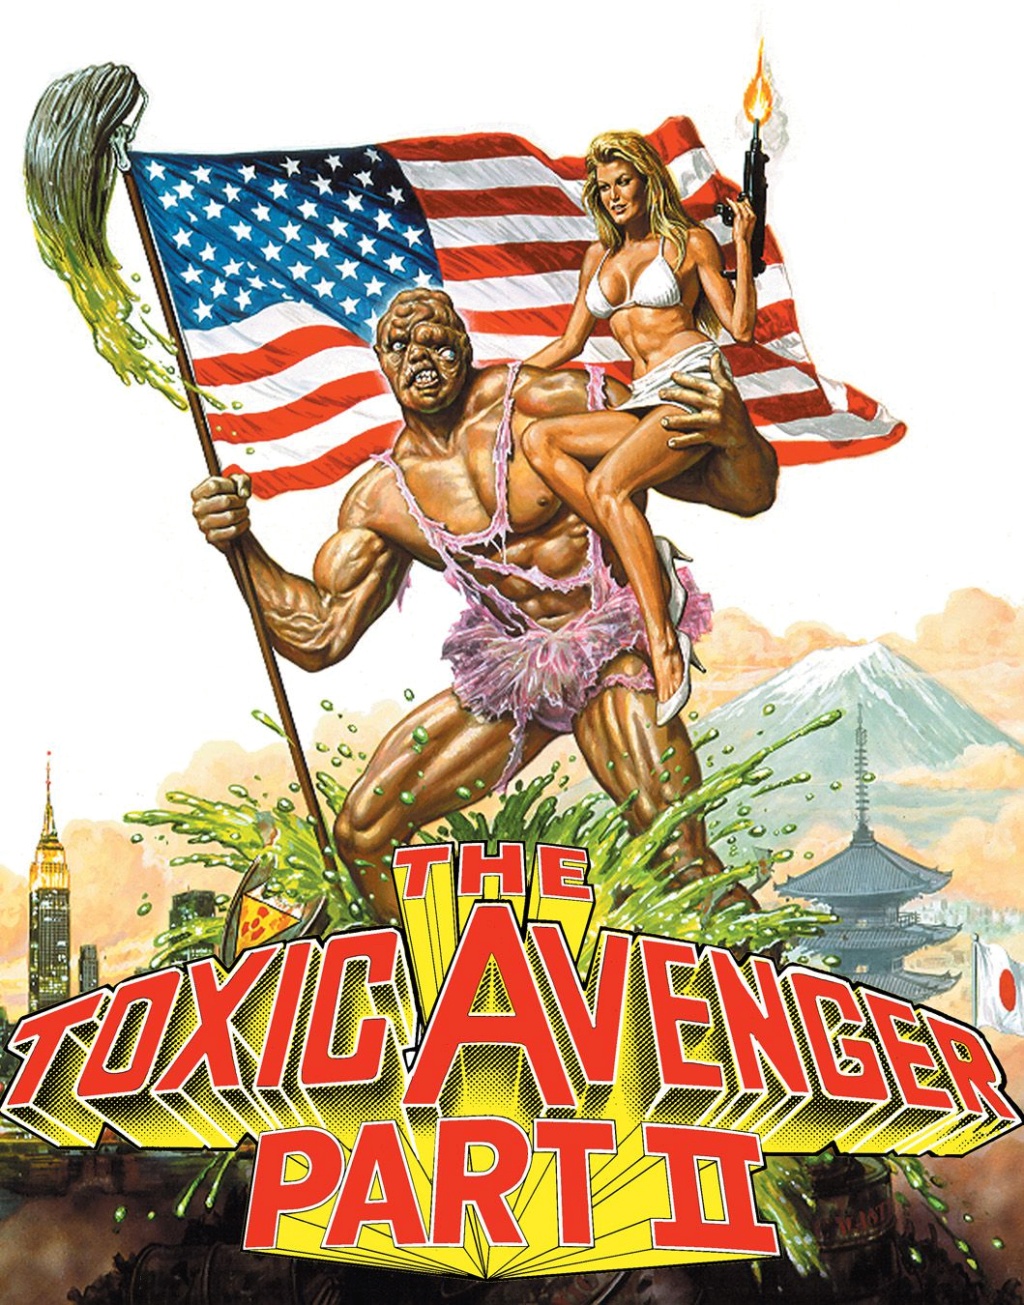 Toxic avenger 2 - MULTI HDLight 1080p